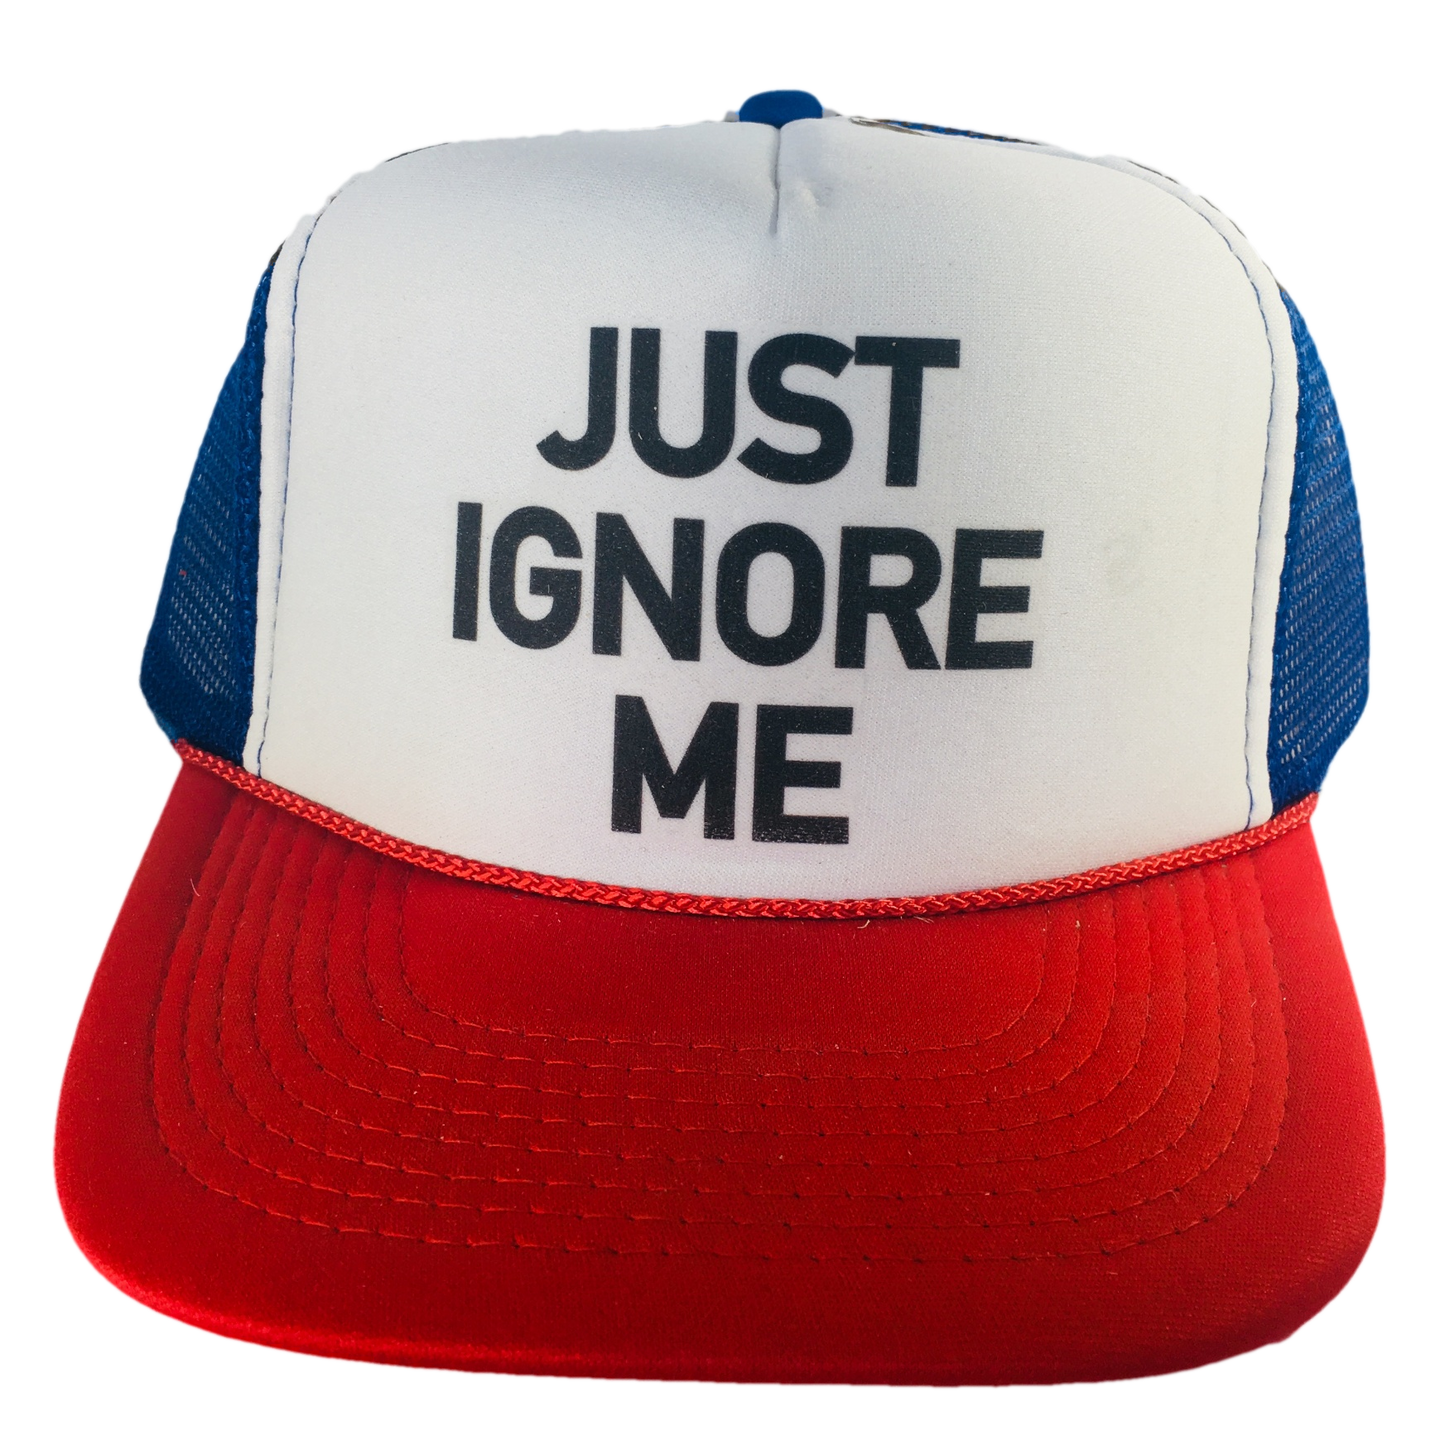 Just Ignore Me Trucker Hat